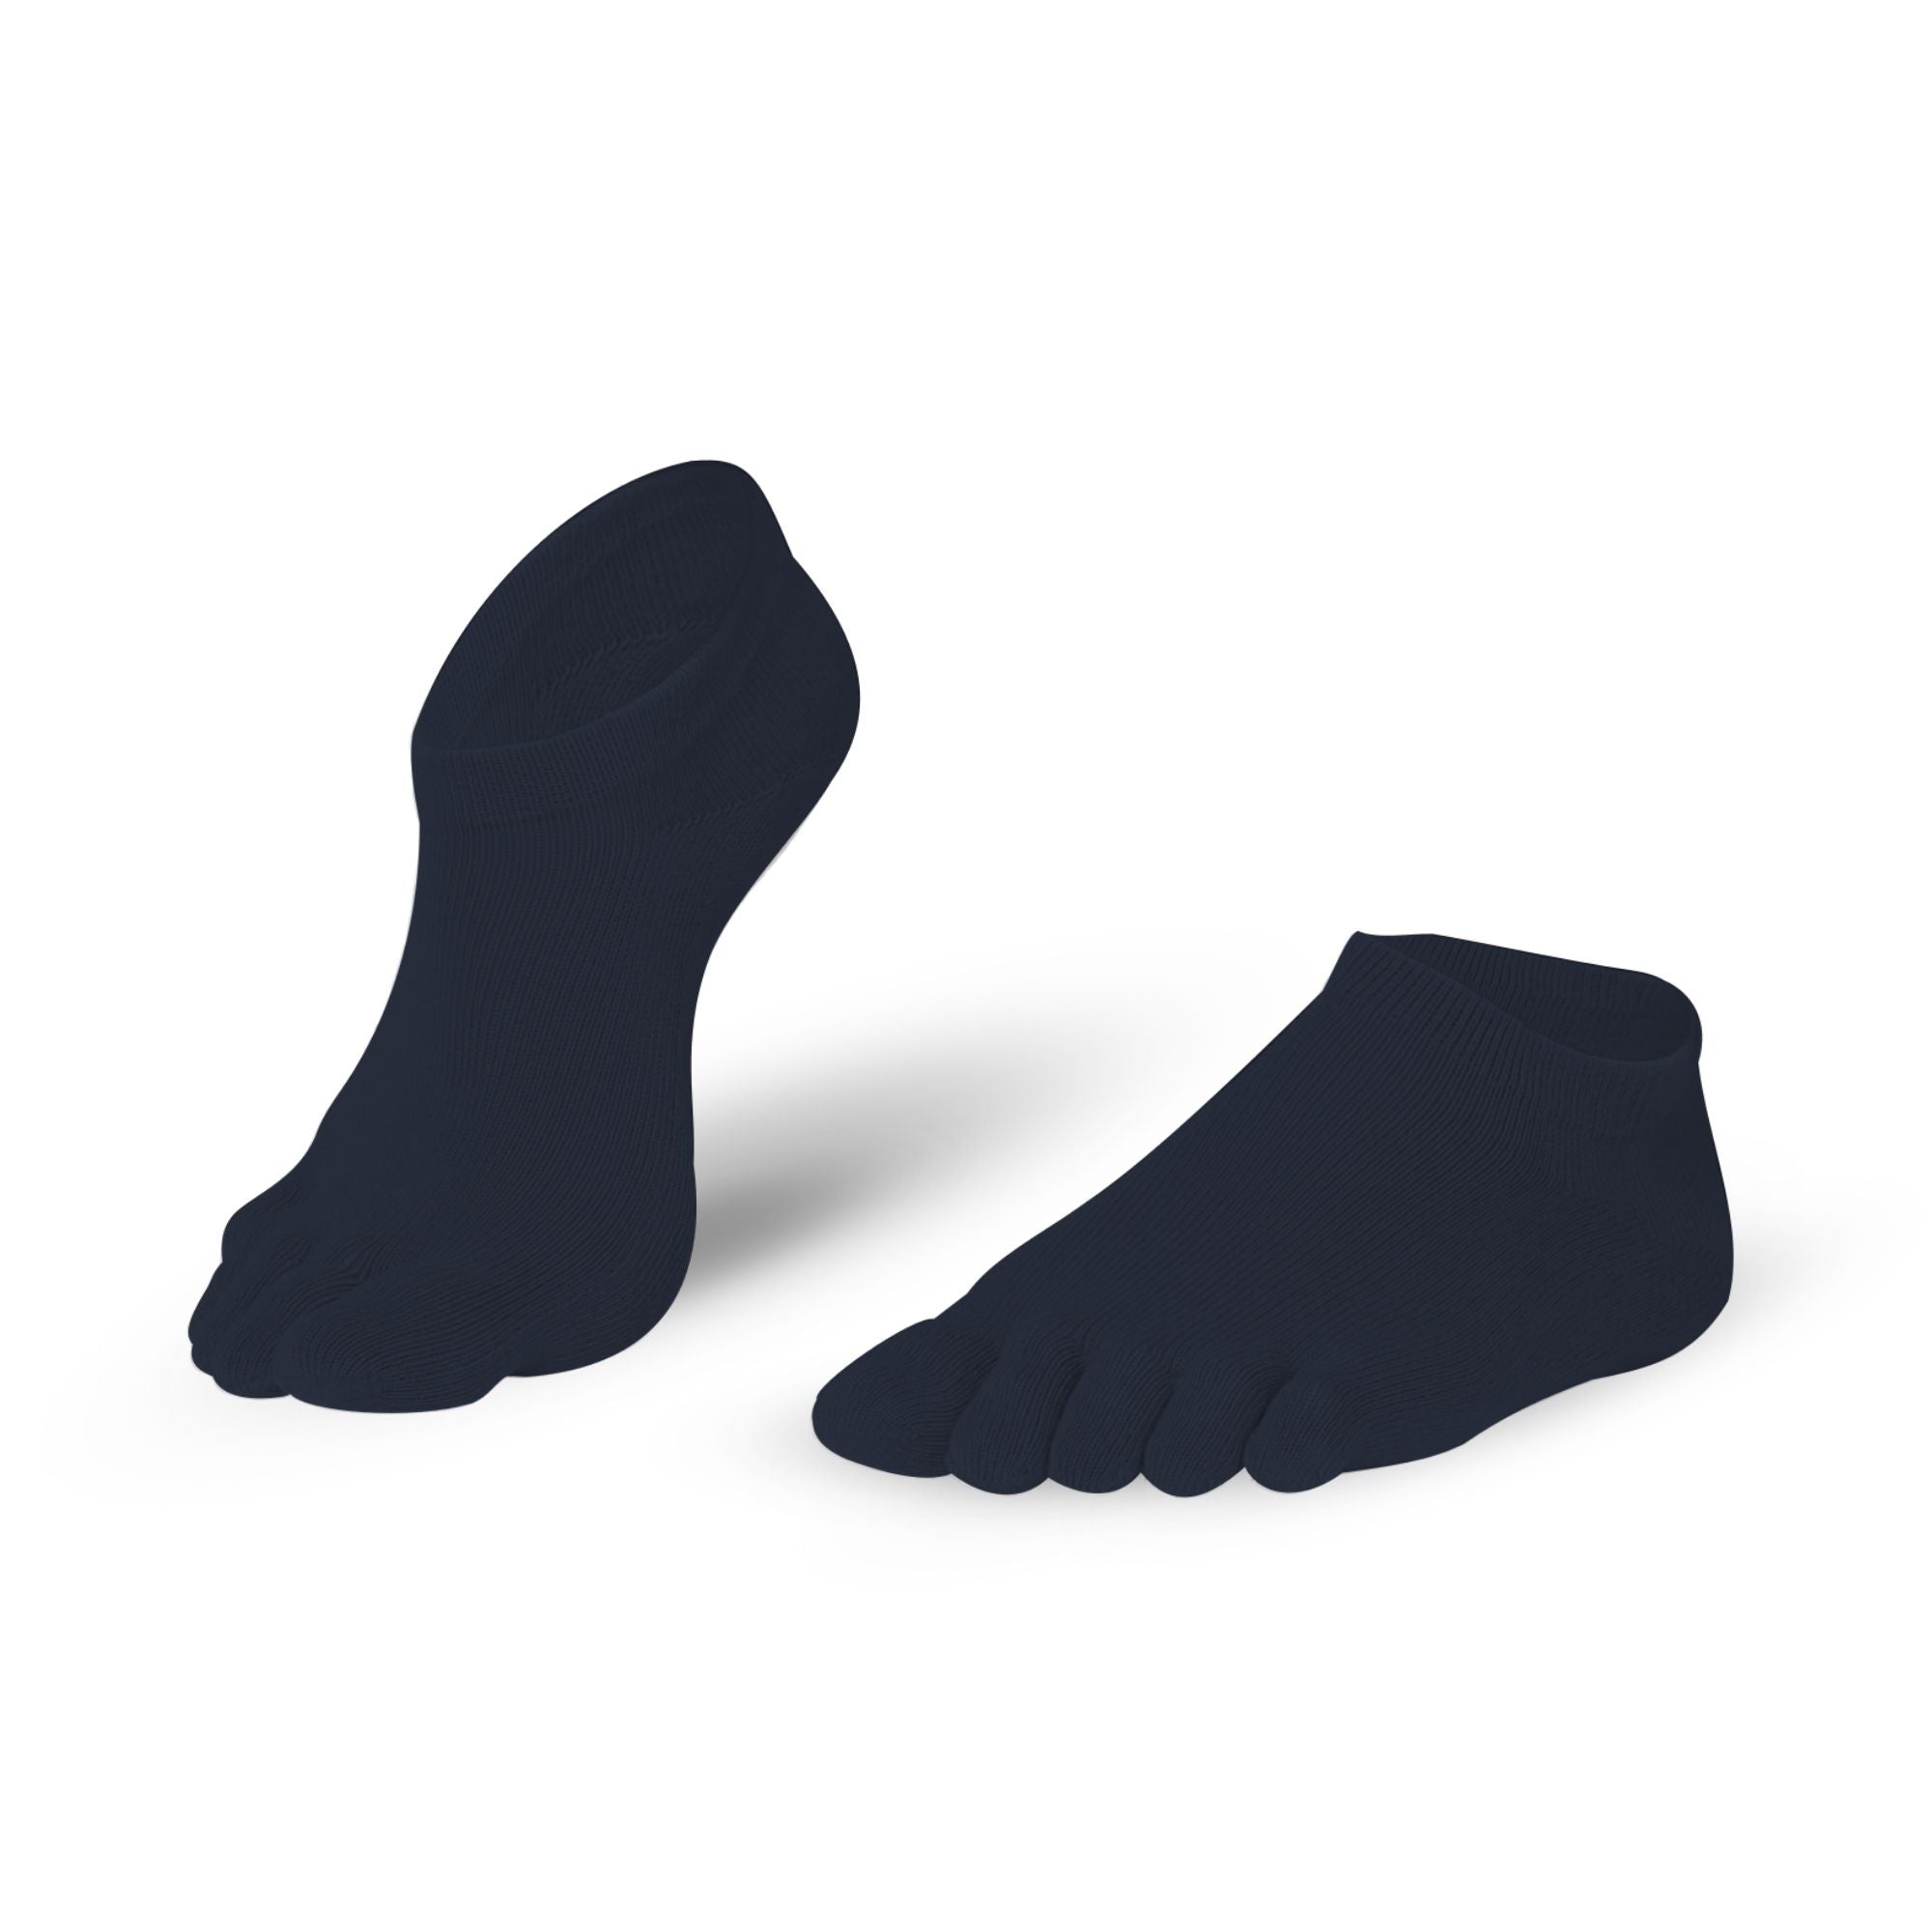 Knitido Essentials Midi Azul - Calzado Barefoot